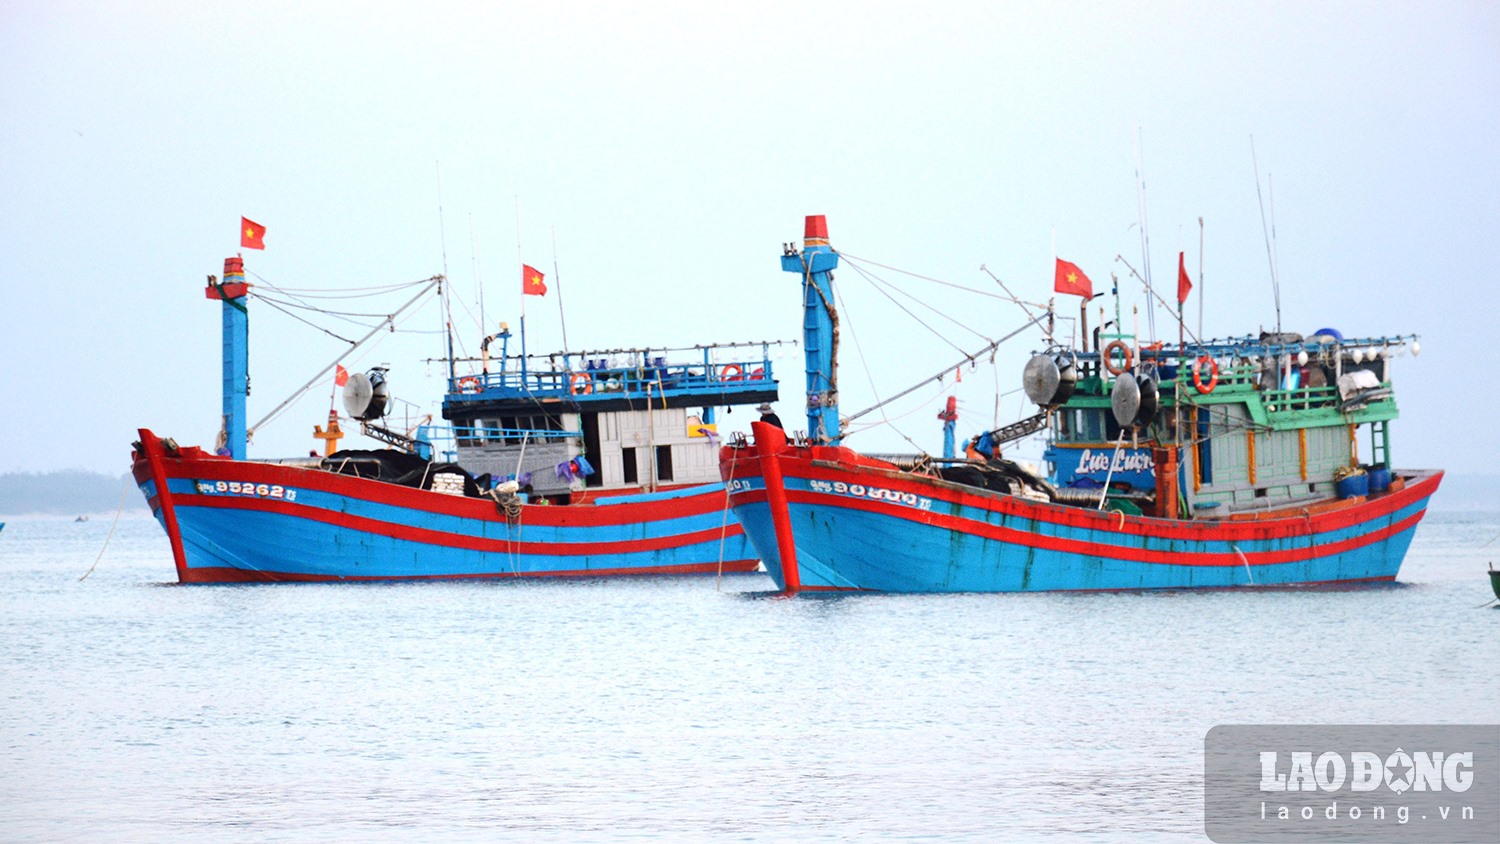 Ngư dân xã Bình Châu, huyện Bình Sơn, tỉnh Quảng Ngãi chủ yếu khai thác hải sản ở Quần đảo Hoàng Sa. Hằng năm có rất nhiều tàu cá gặp nạn trên biển, gây thiệt hại nặng nề về kinh tế. Ảnh: Ngọc Viên